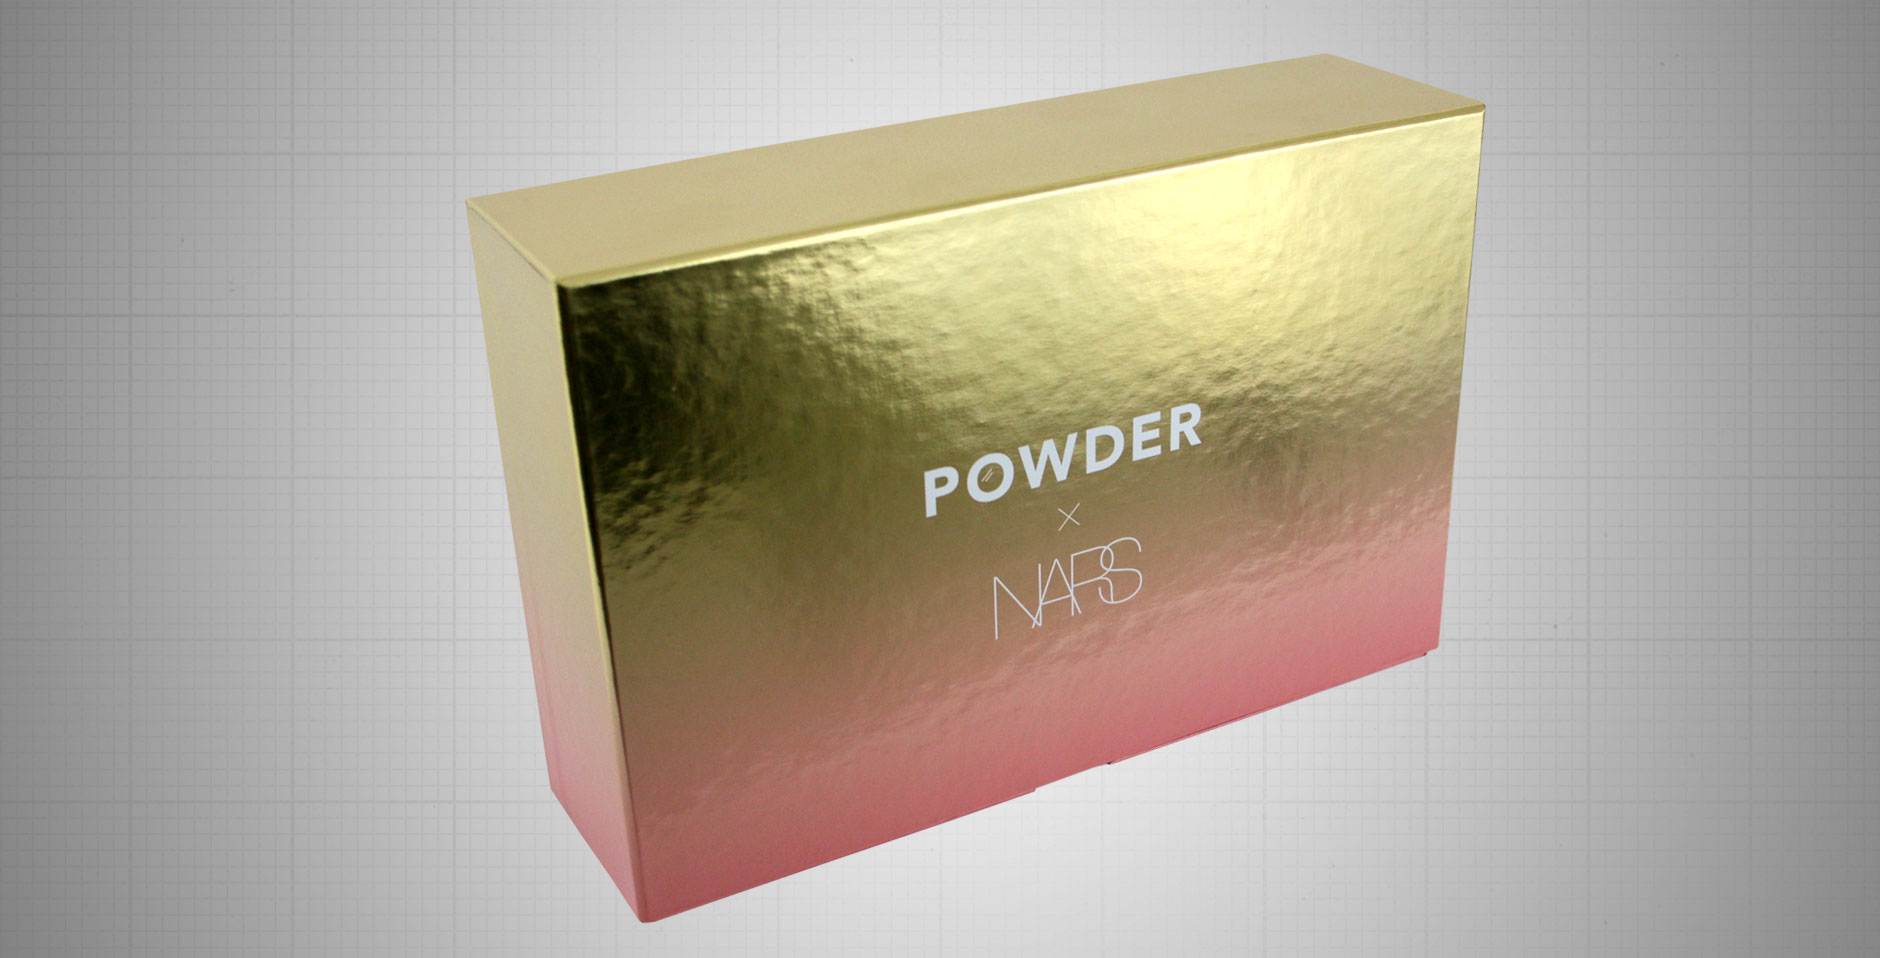 Nars Powder Packaging